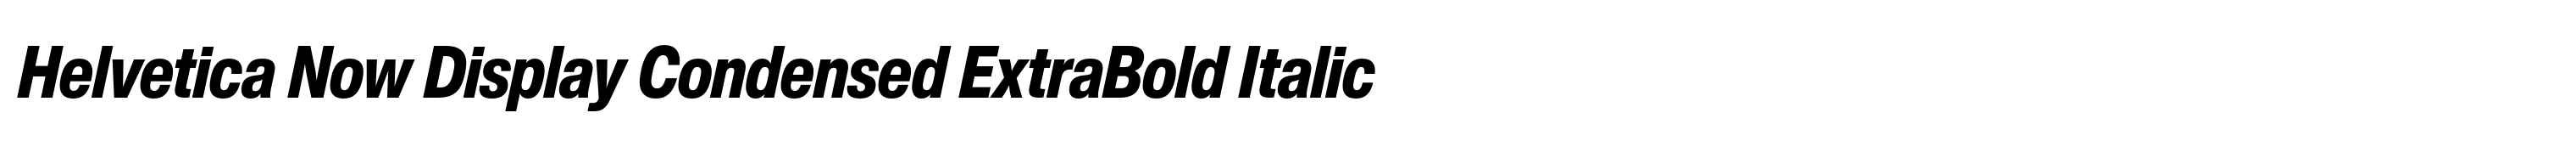 Helvetica Now Display Condensed ExtraBold Italic